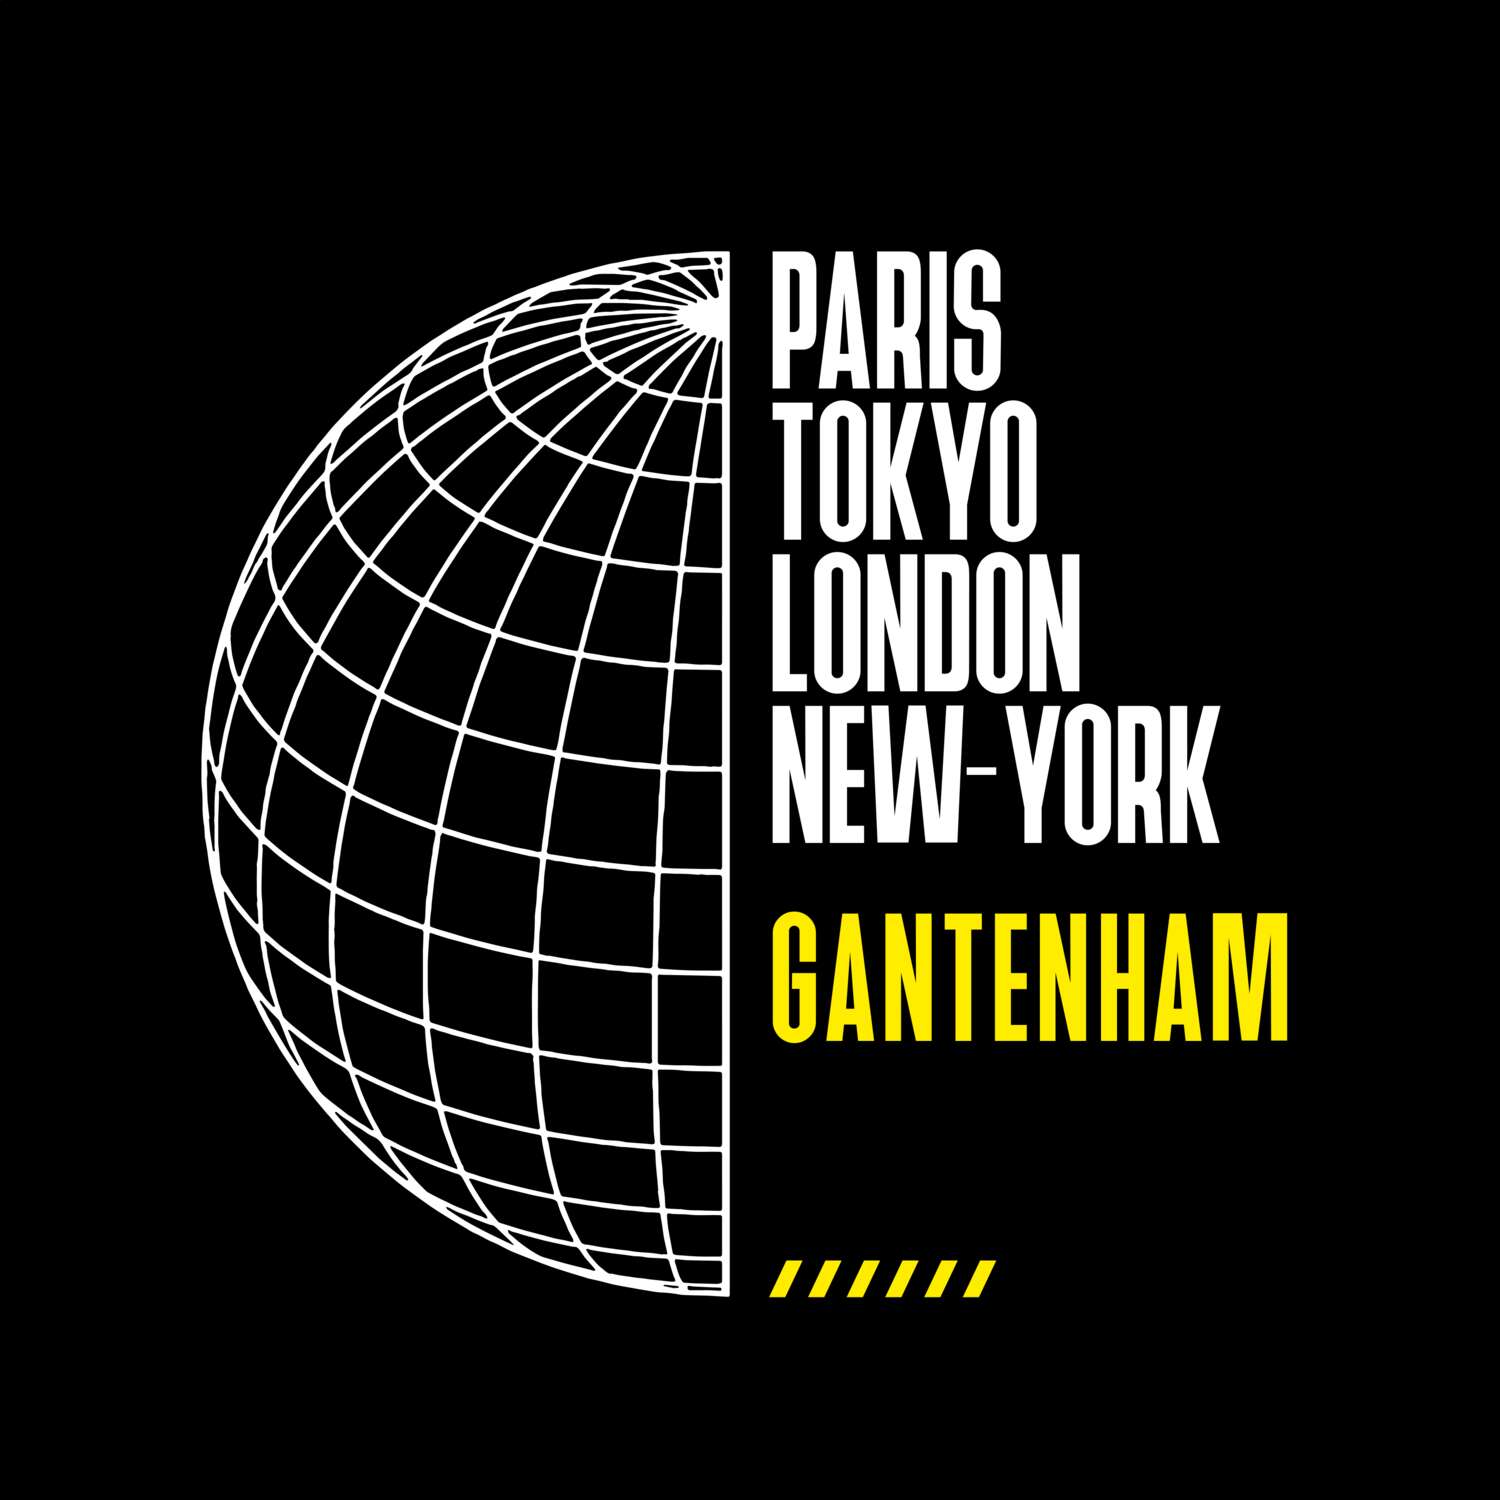 Gantenham T-Shirt »Paris Tokyo London«